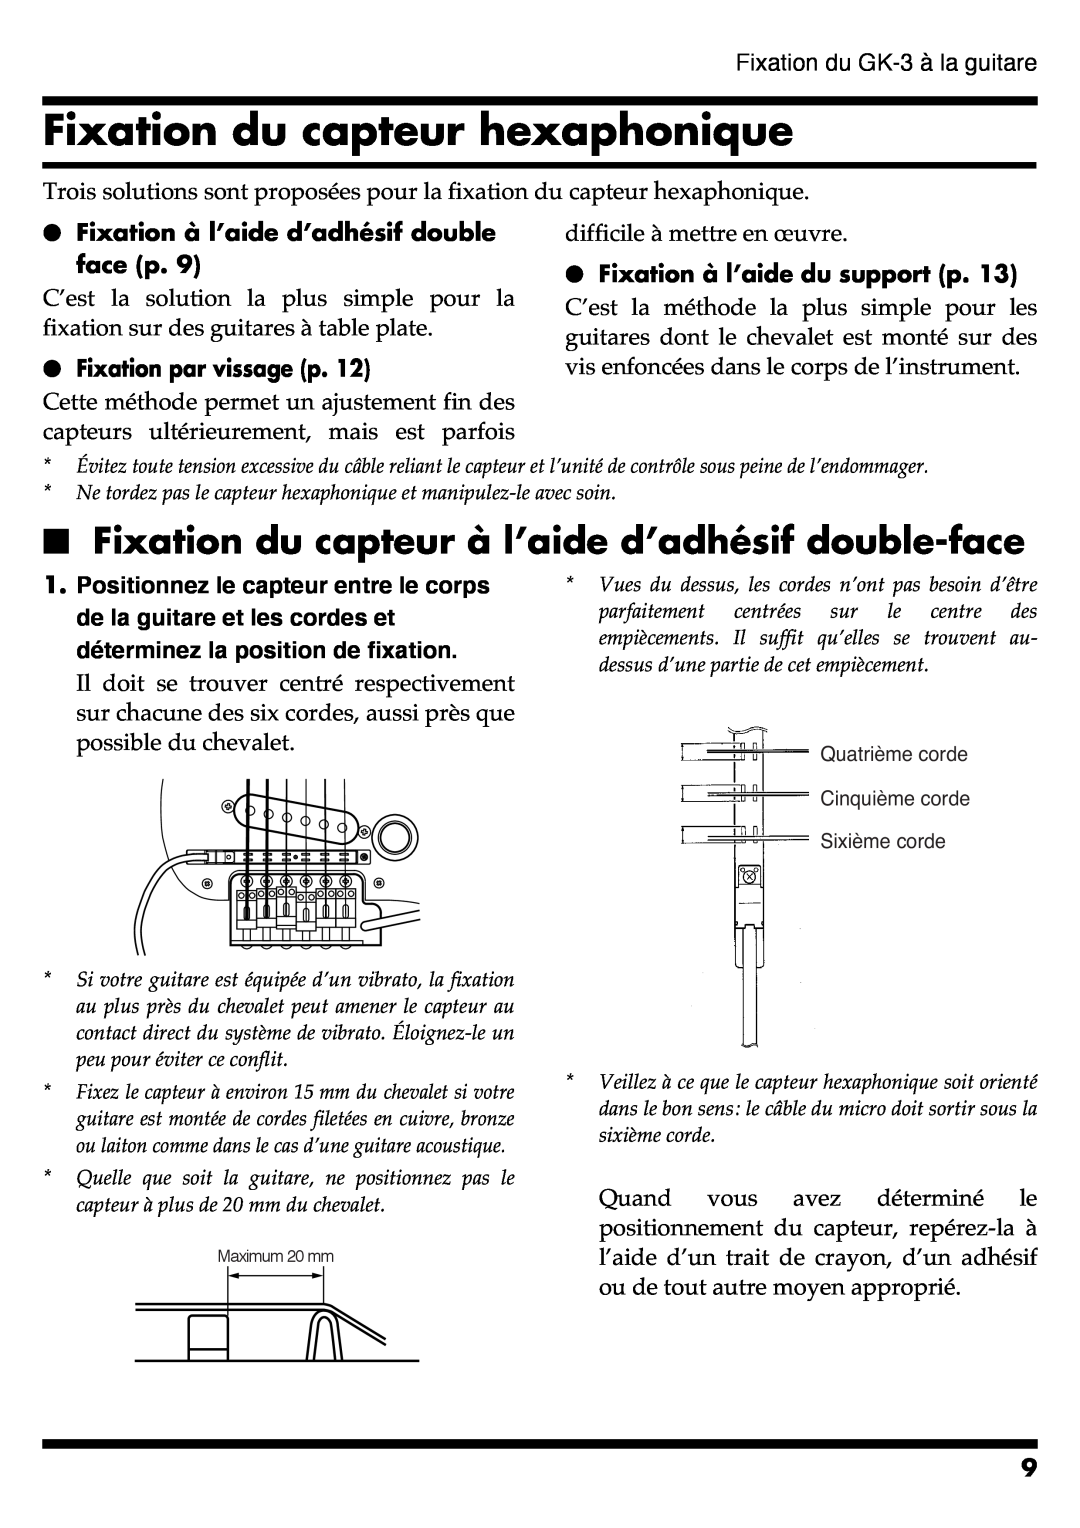 Roland GR-20 manual Fixation du capteur hexaphonique, Fixation à l’aide d’adhésif double face p, Fixation par vissage p 